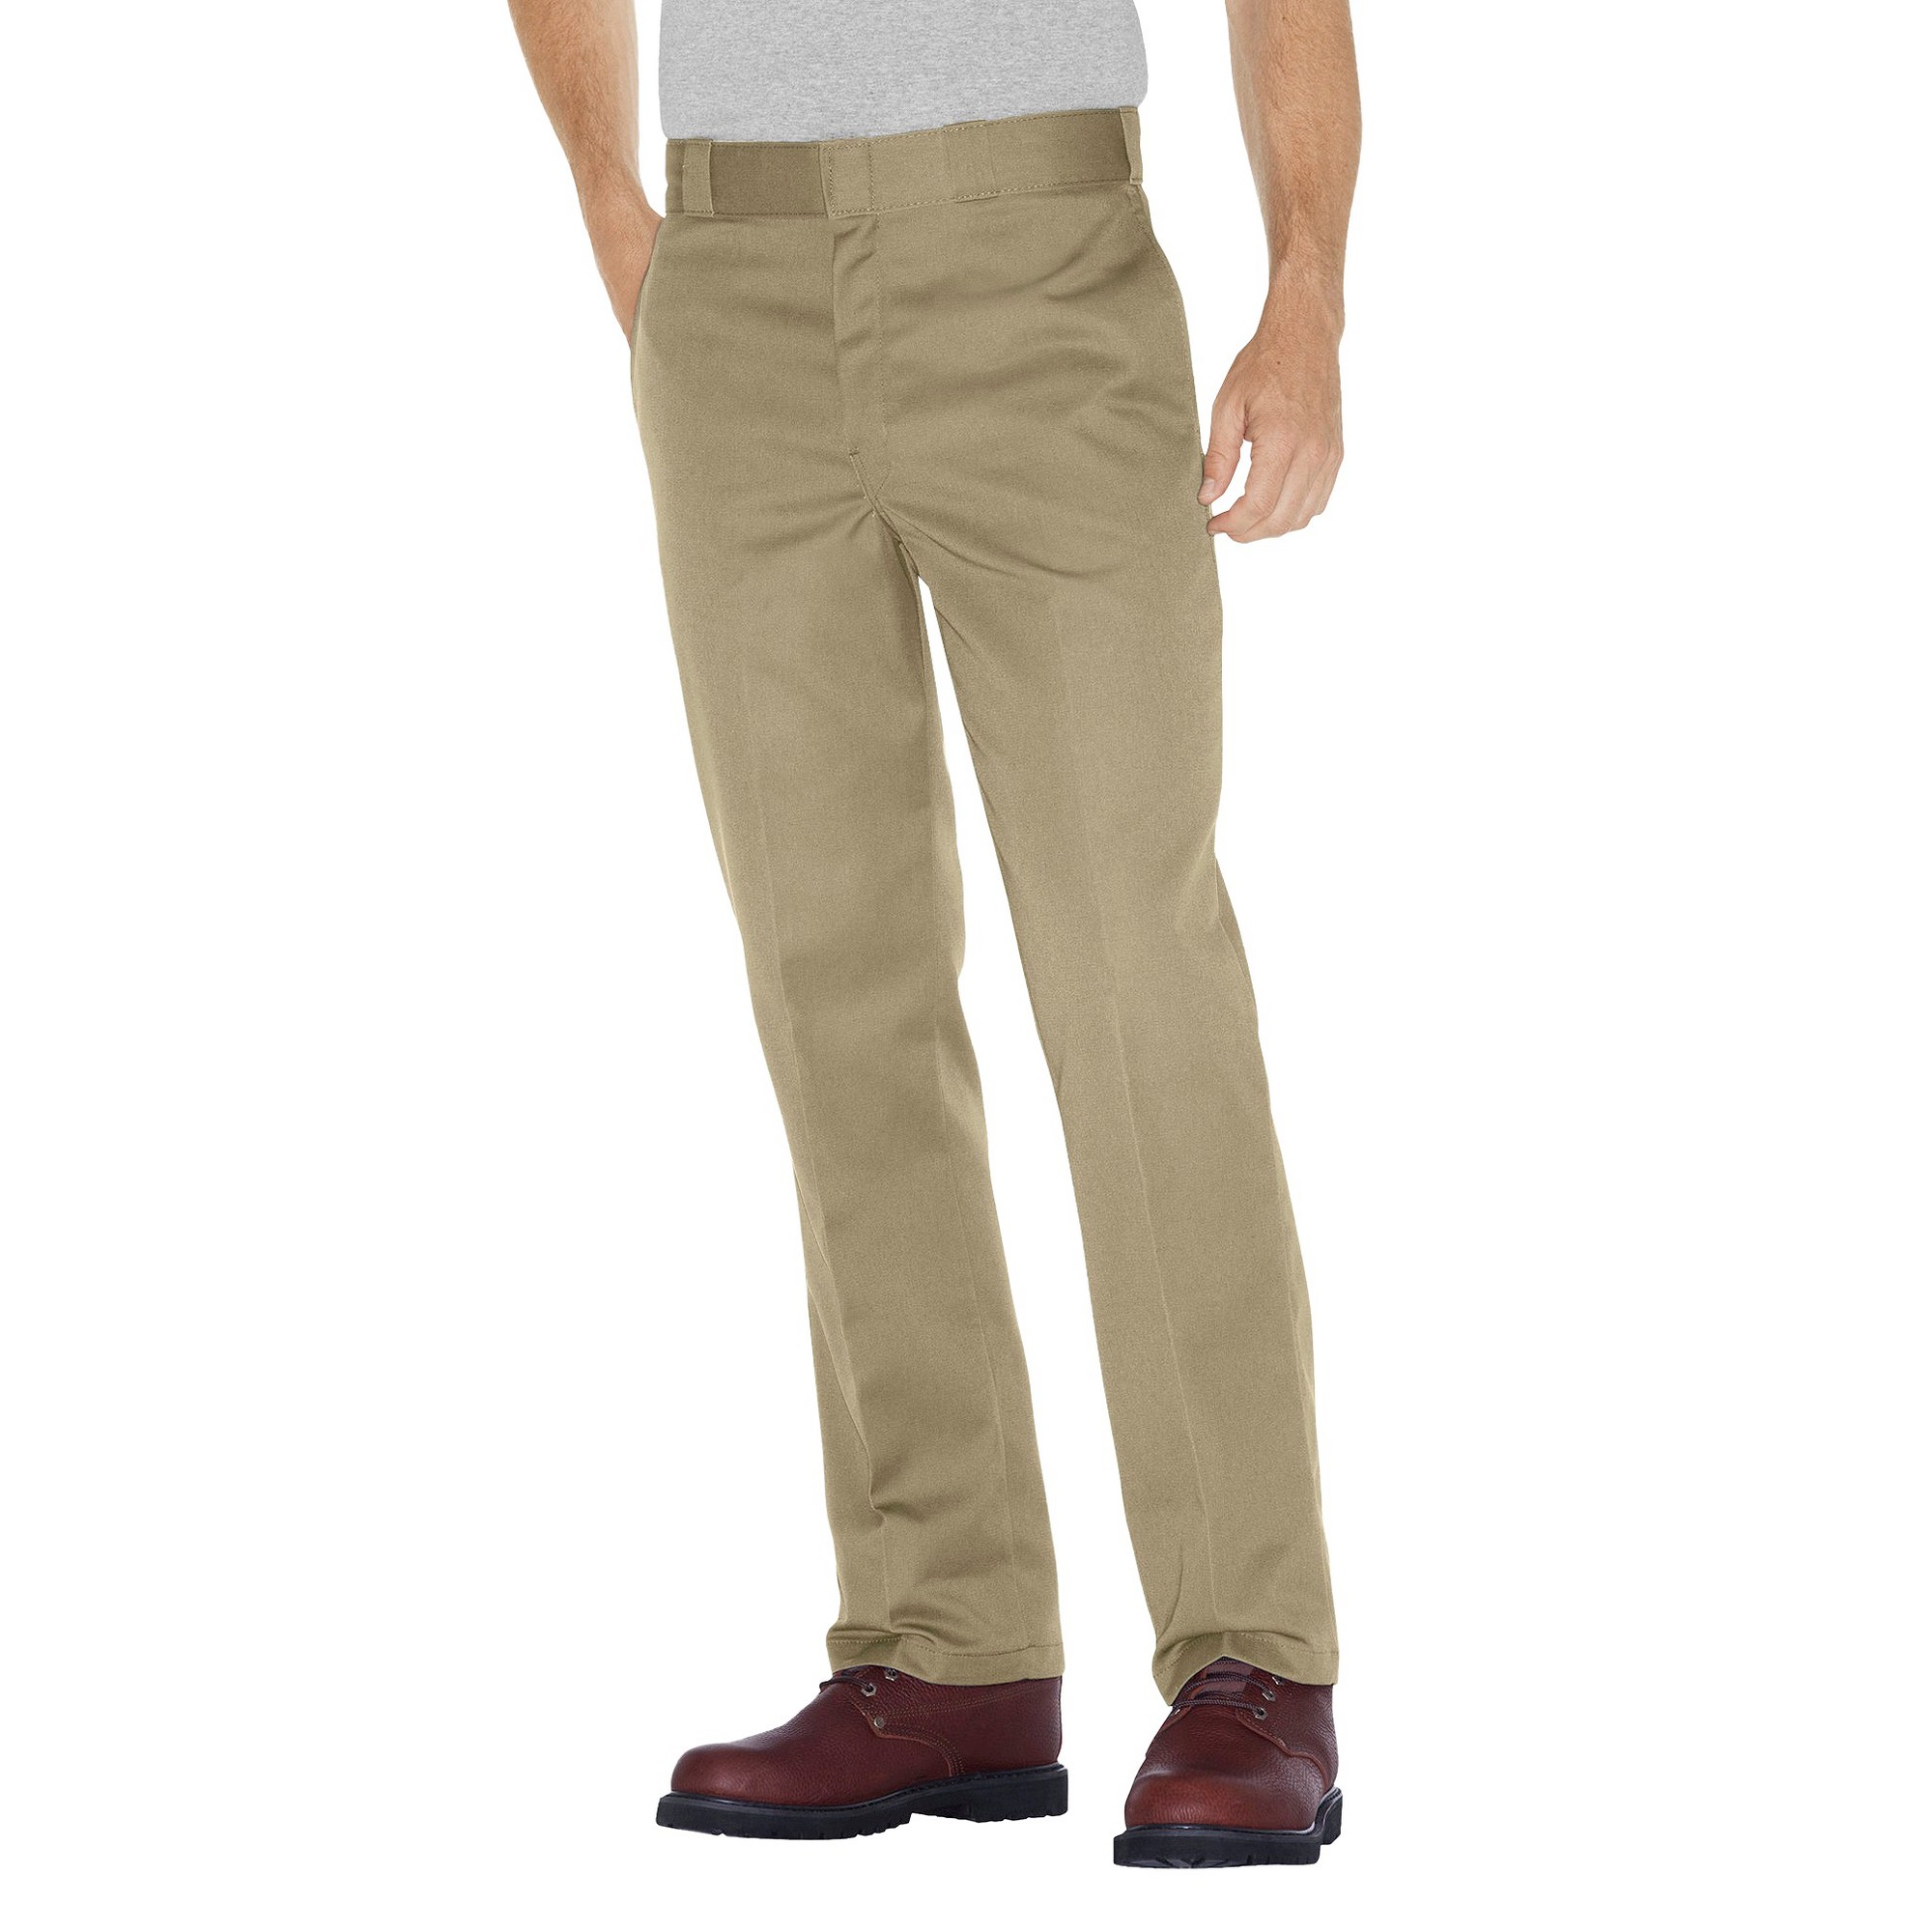 Dickies - Men's Big & Tall Original Fit 874 Twill Pants Khaki 46x32, Green